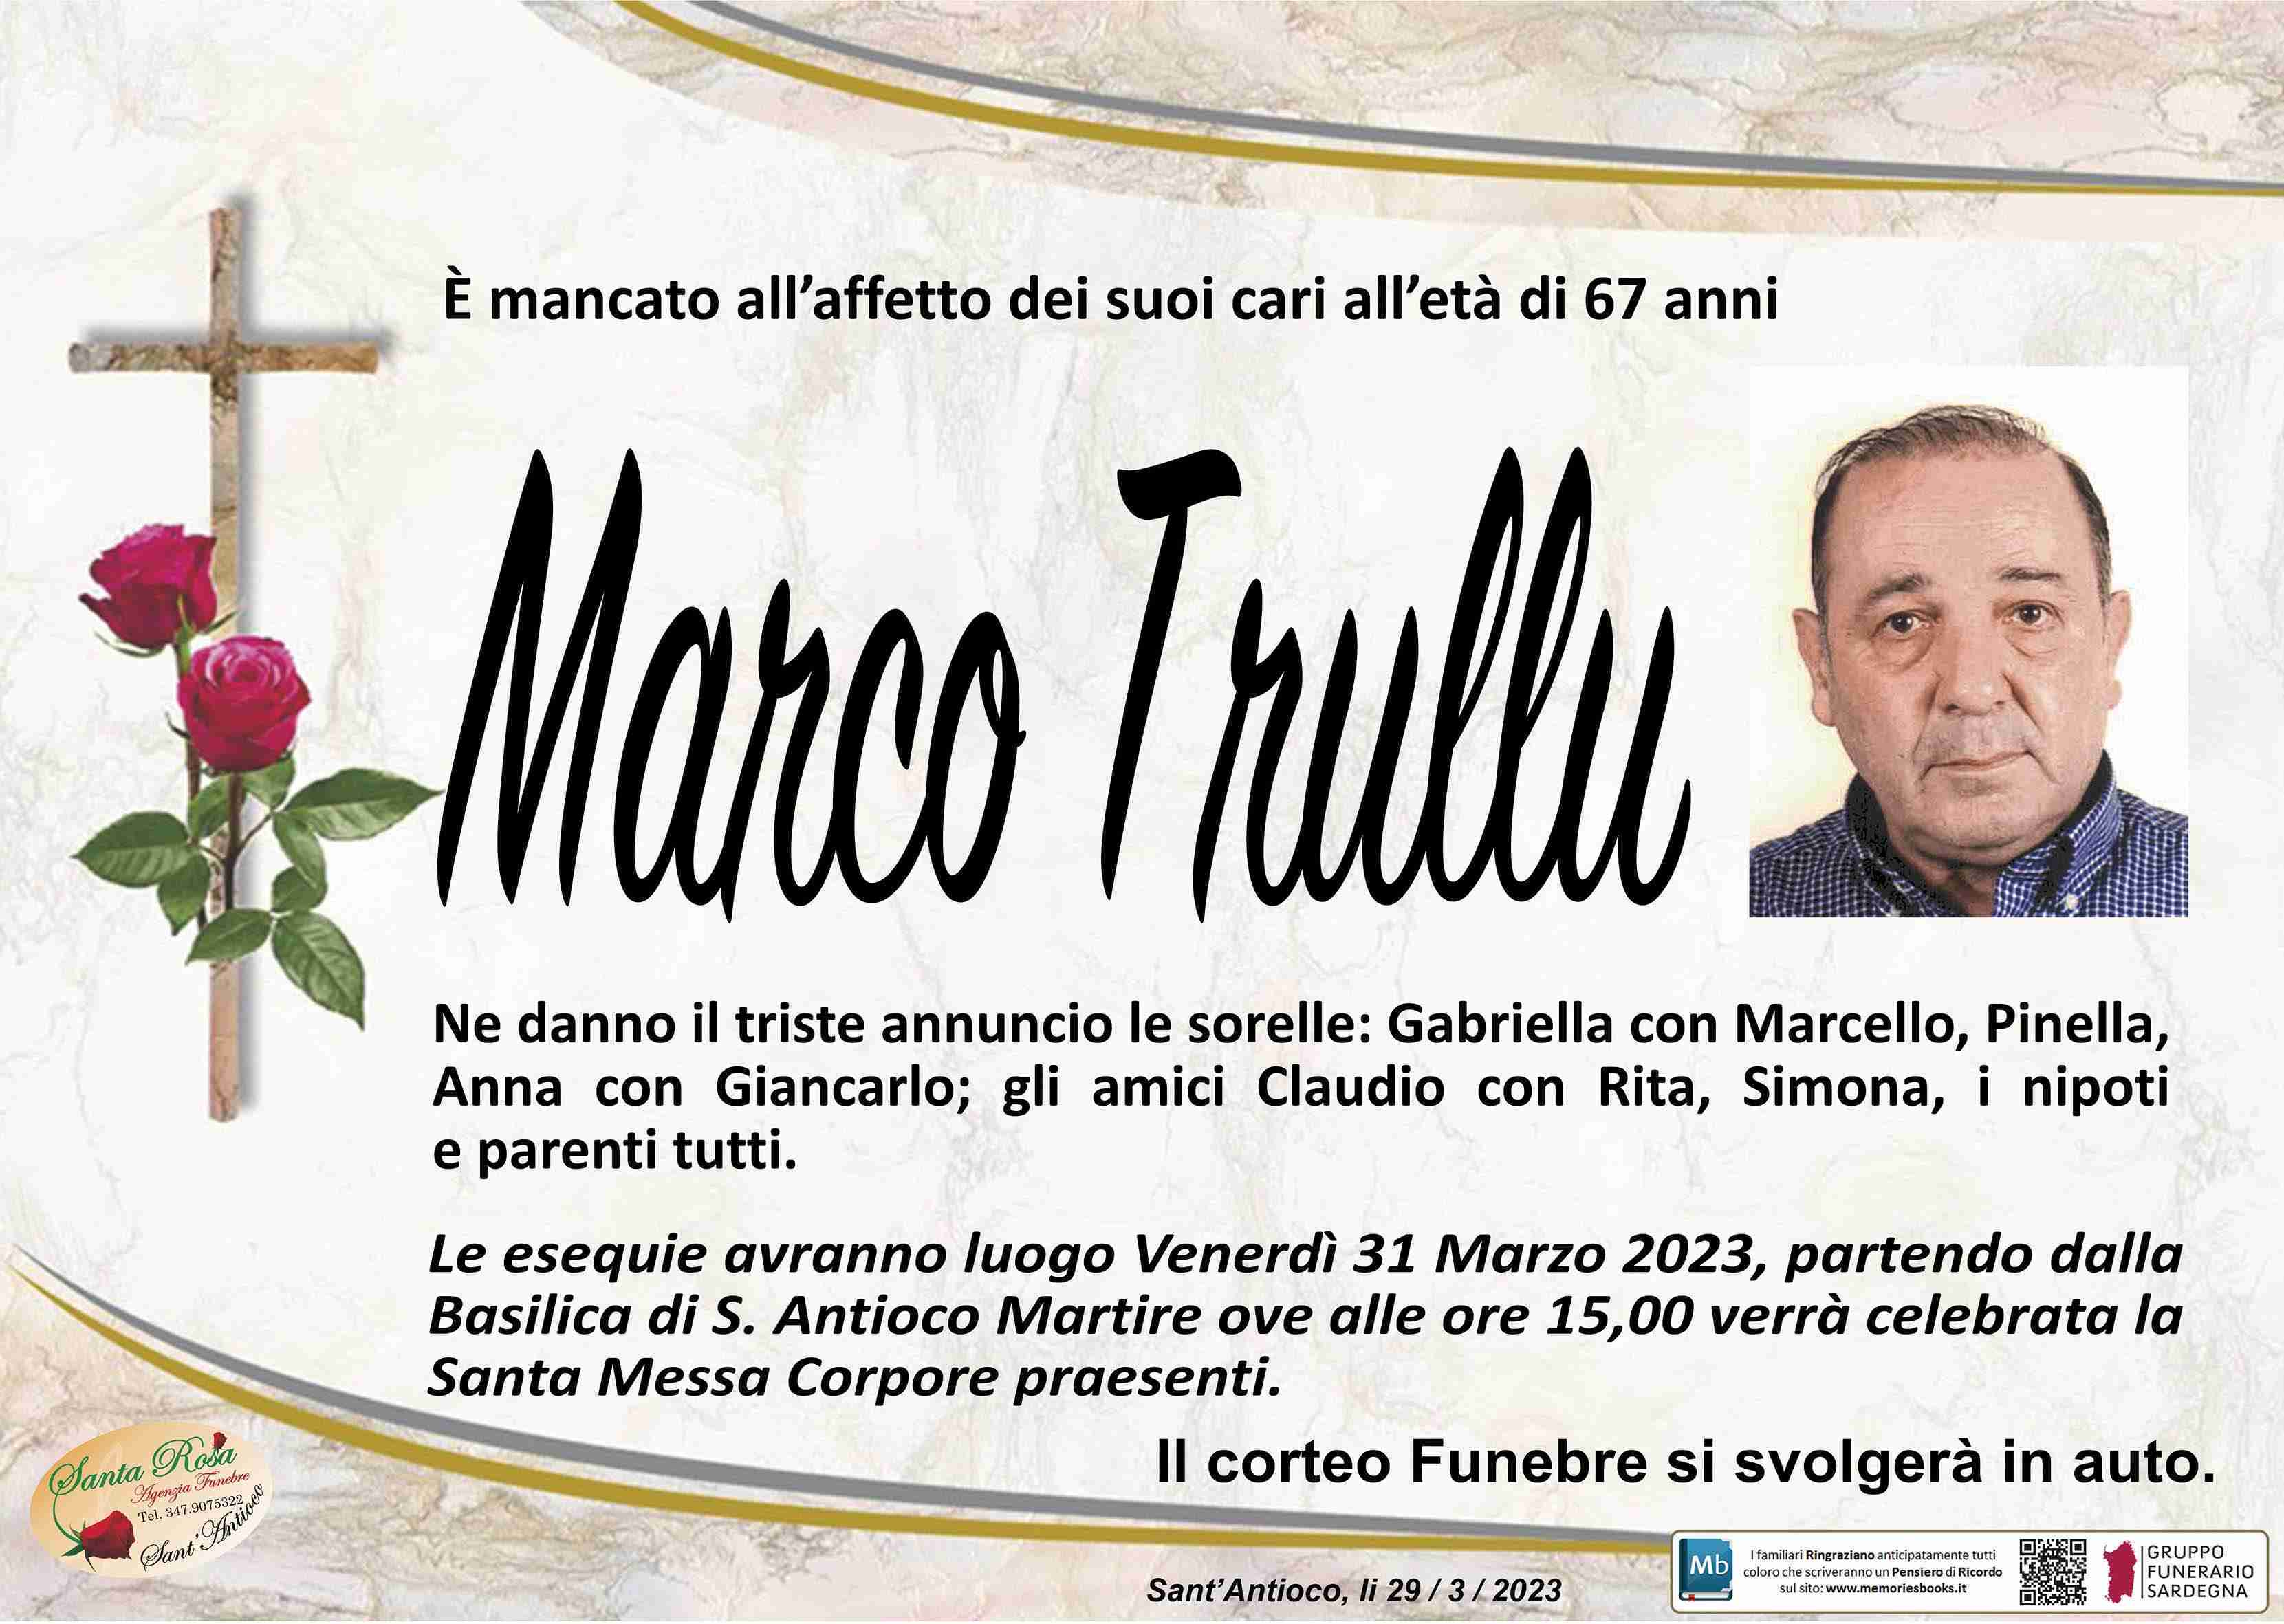 Marco Trullu